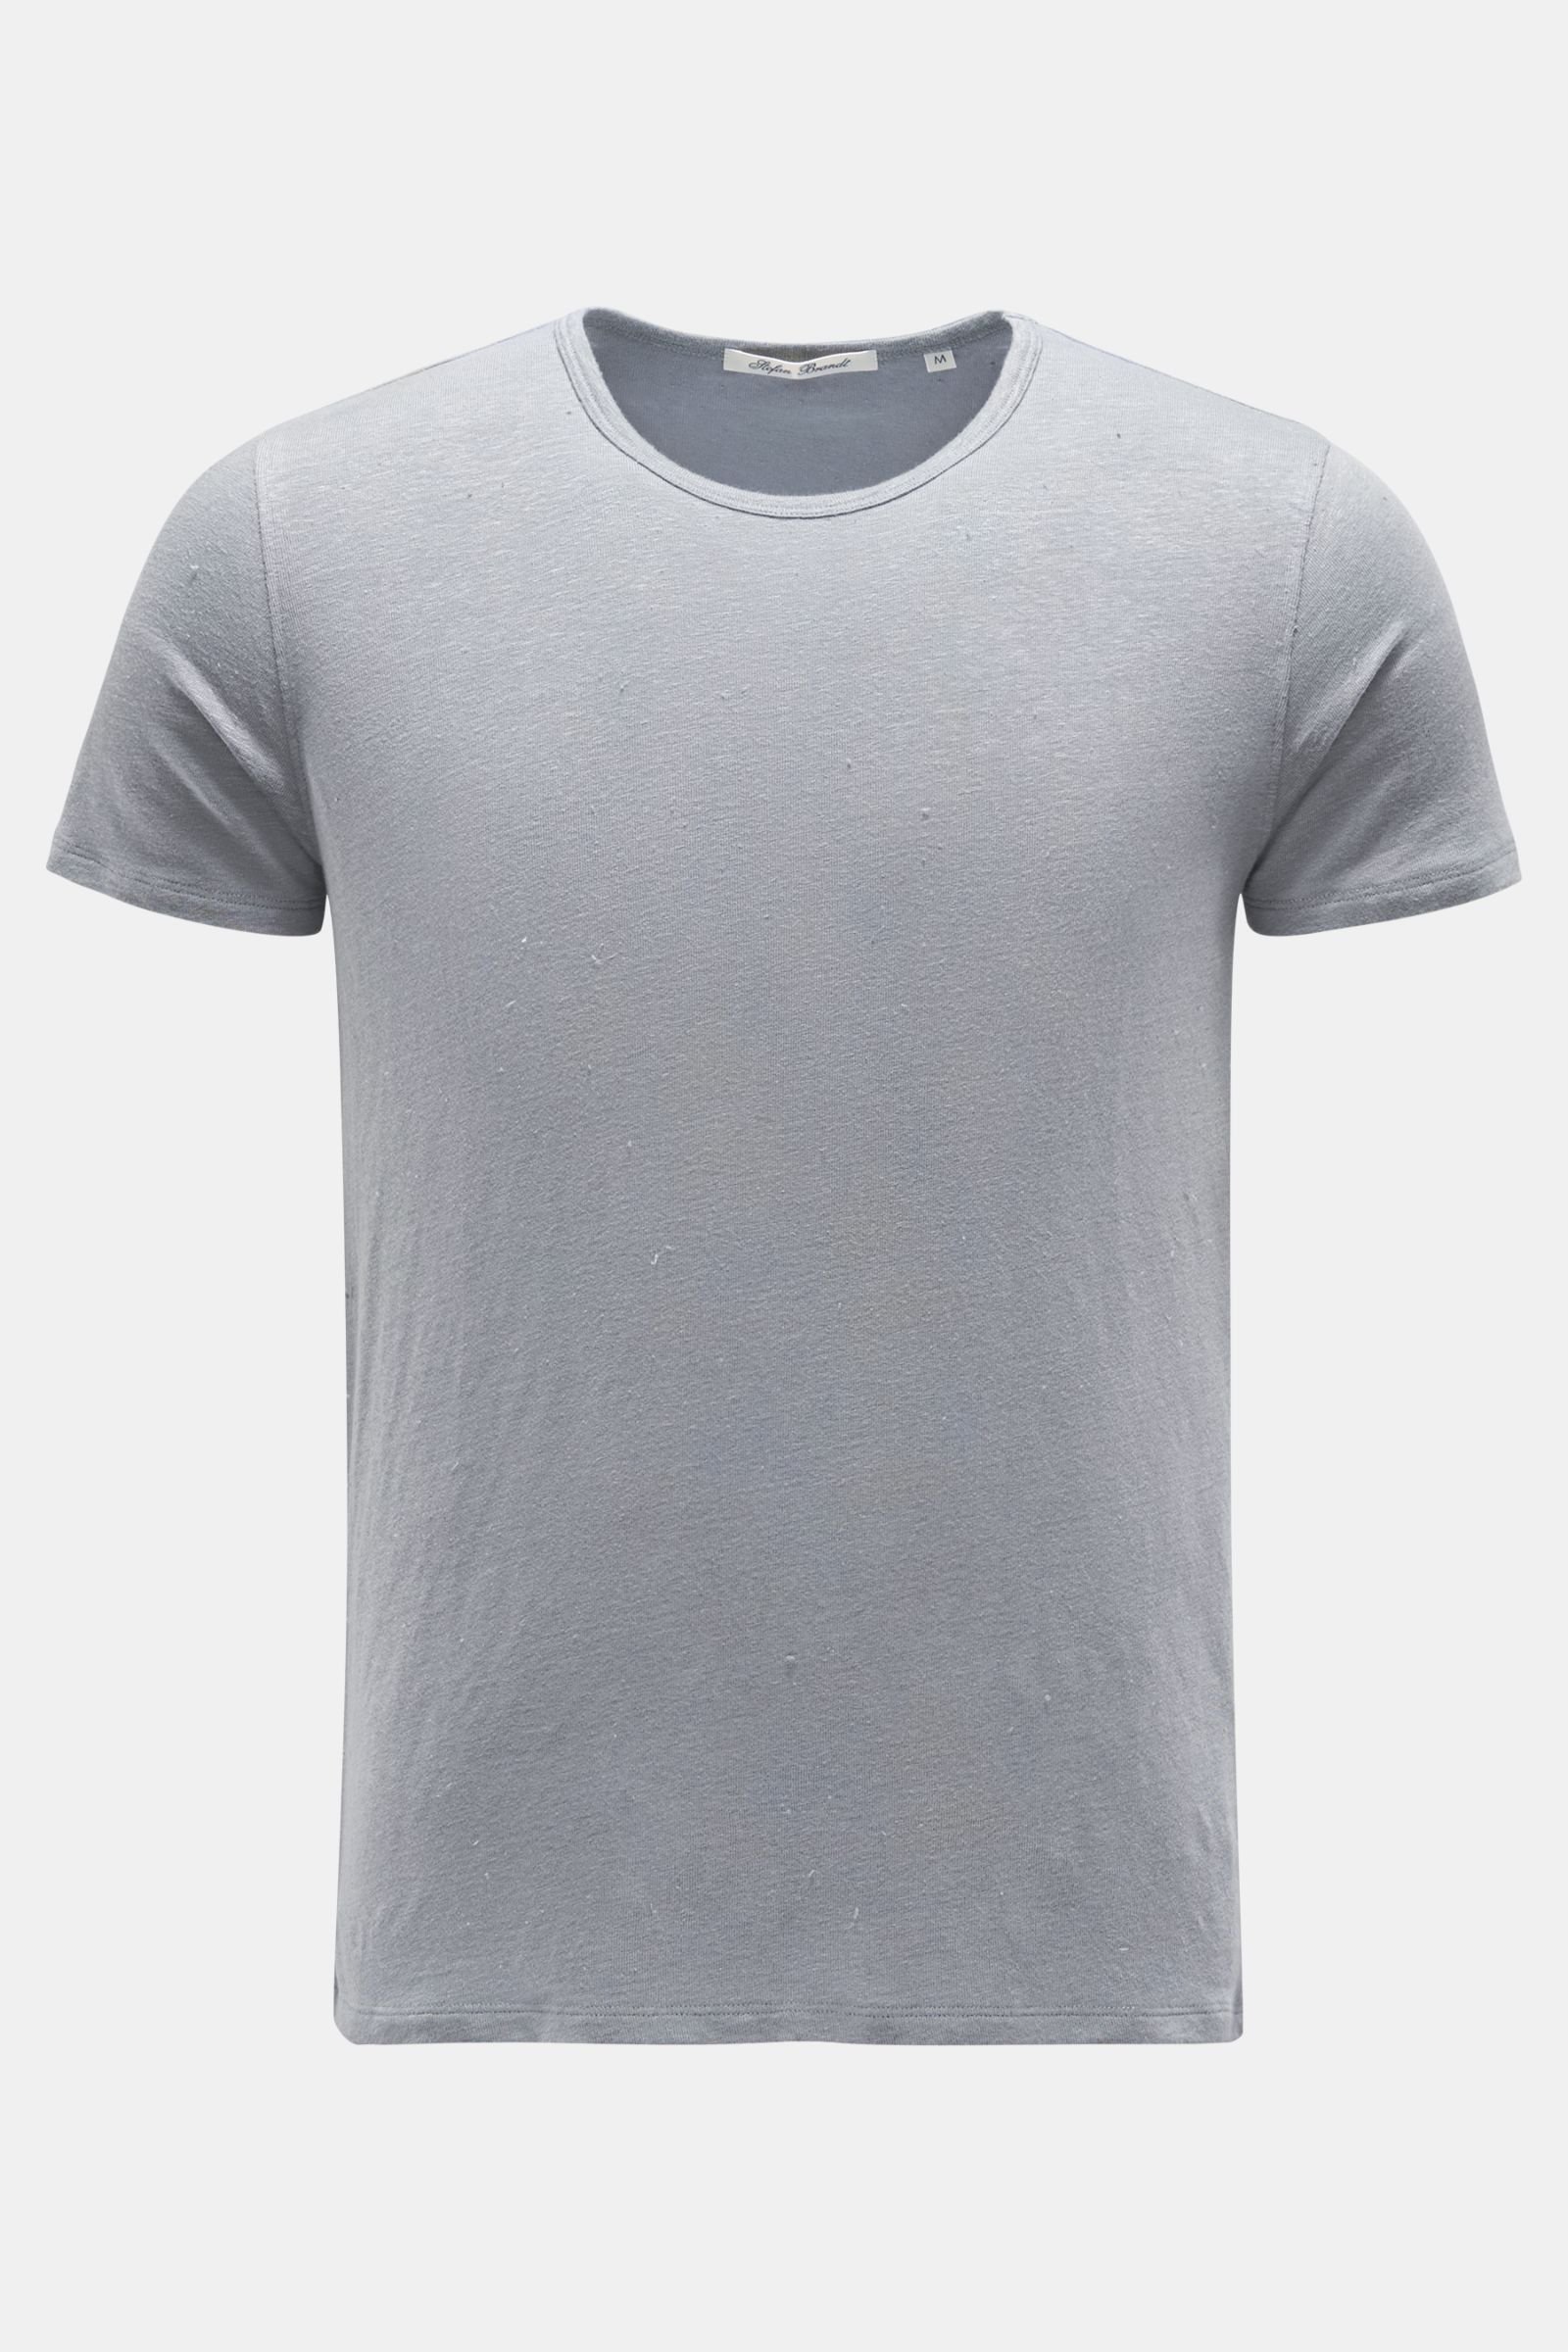 Leinen Rundhals-T-Shirt grau